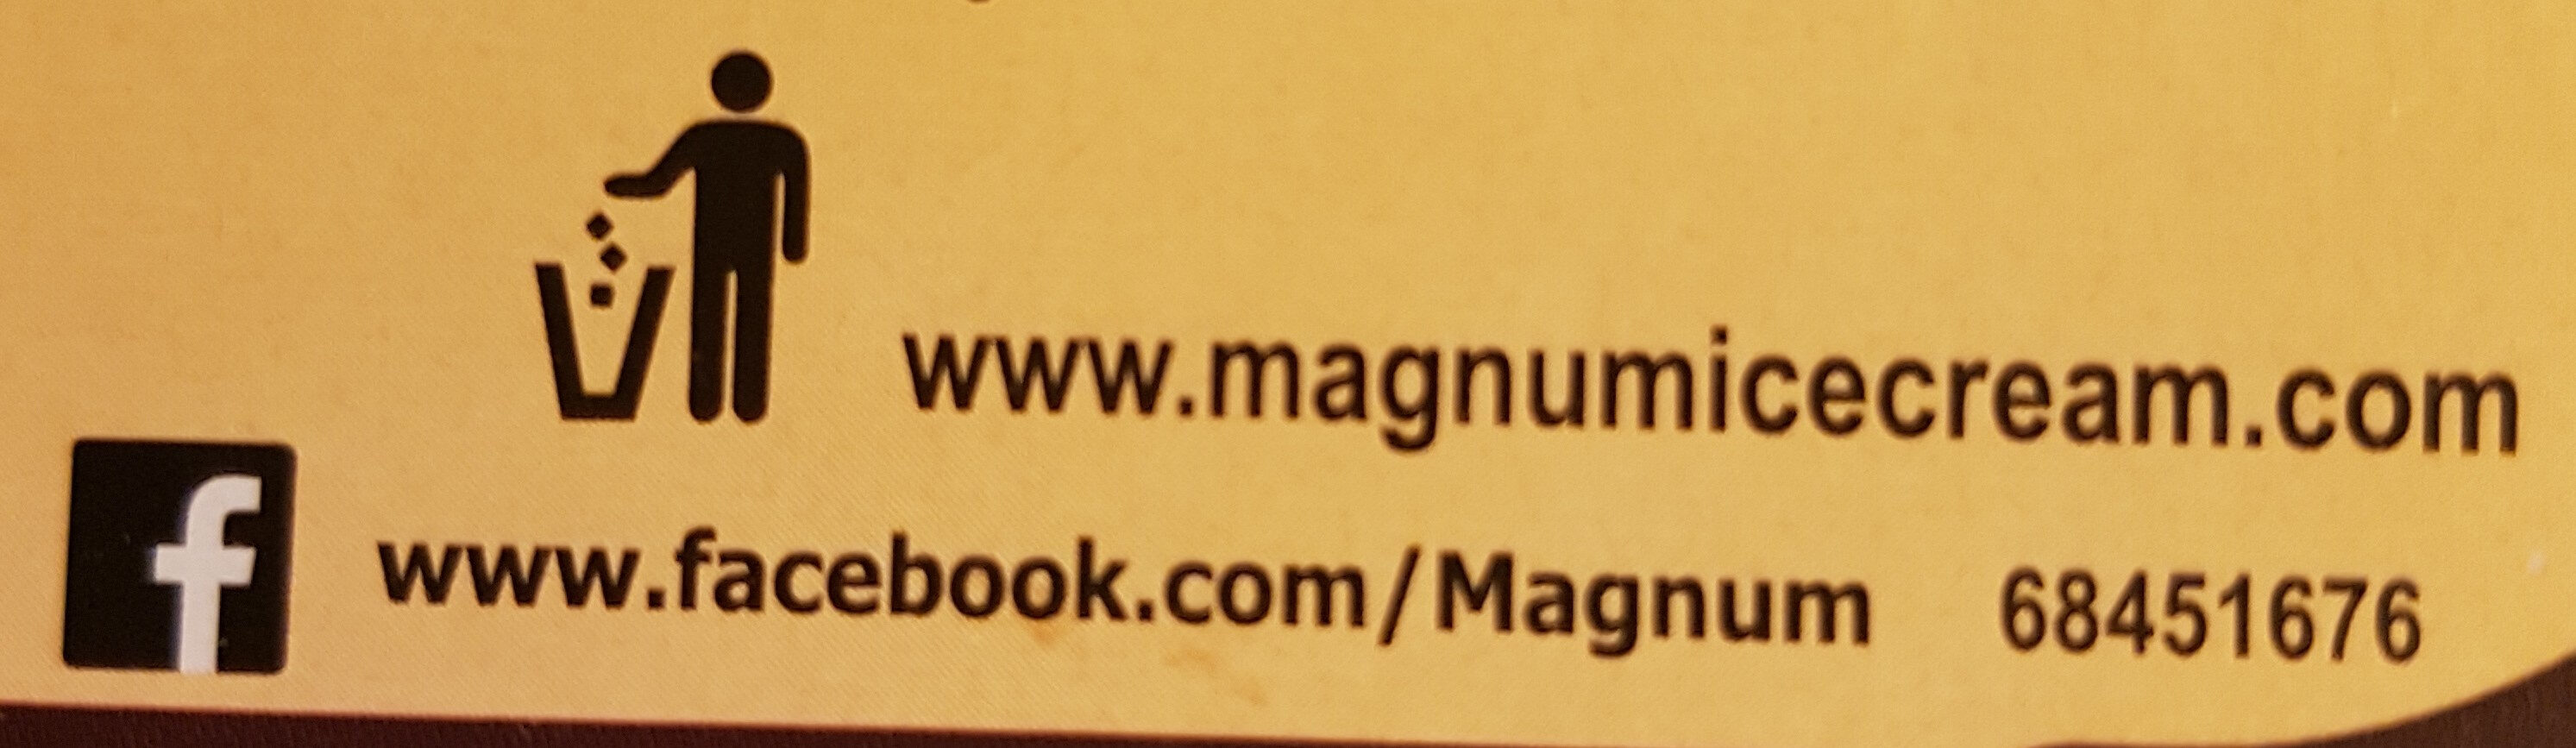 Magnum Glace Bâtonnet Double Caramel 4x88ml - Instruction de recyclage et/ou informations d'emballage